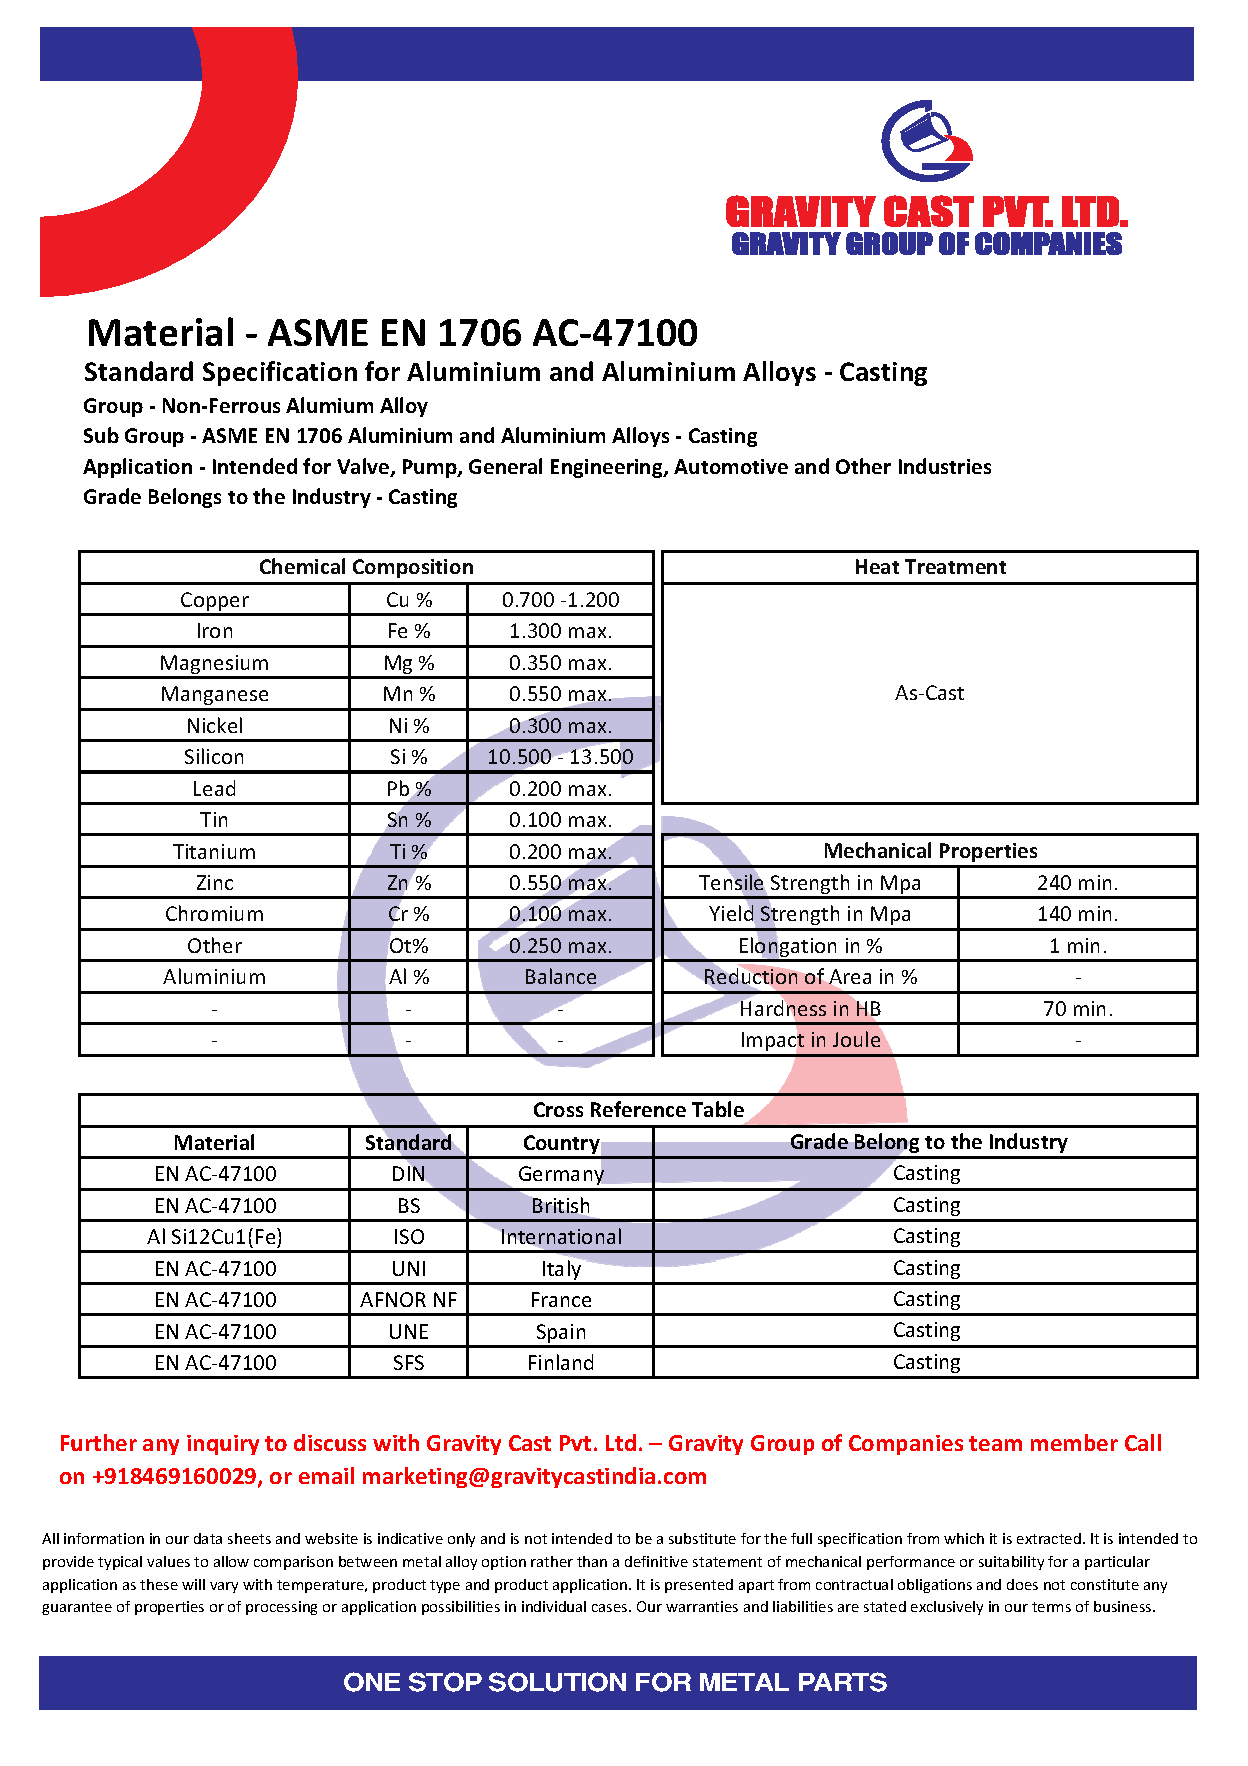 ASME EN 1706 AC-47100.pdf